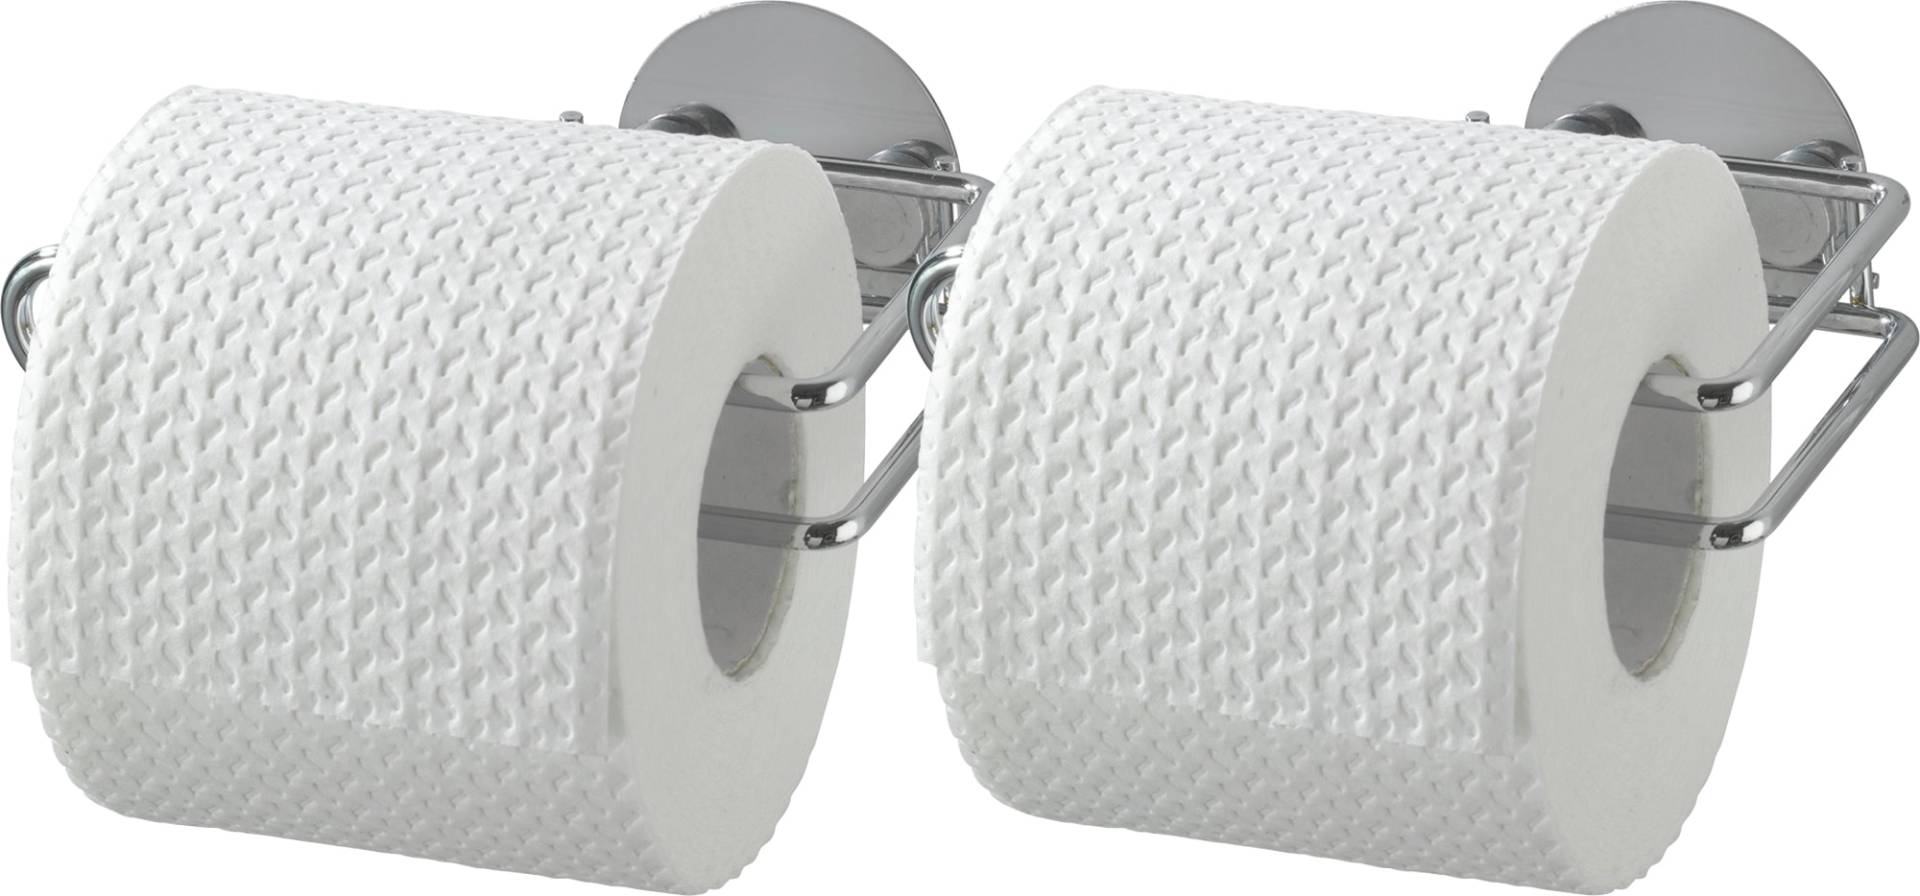 WENKO Toilettenpapierhalter »Turbo-Loc®« von Wenko